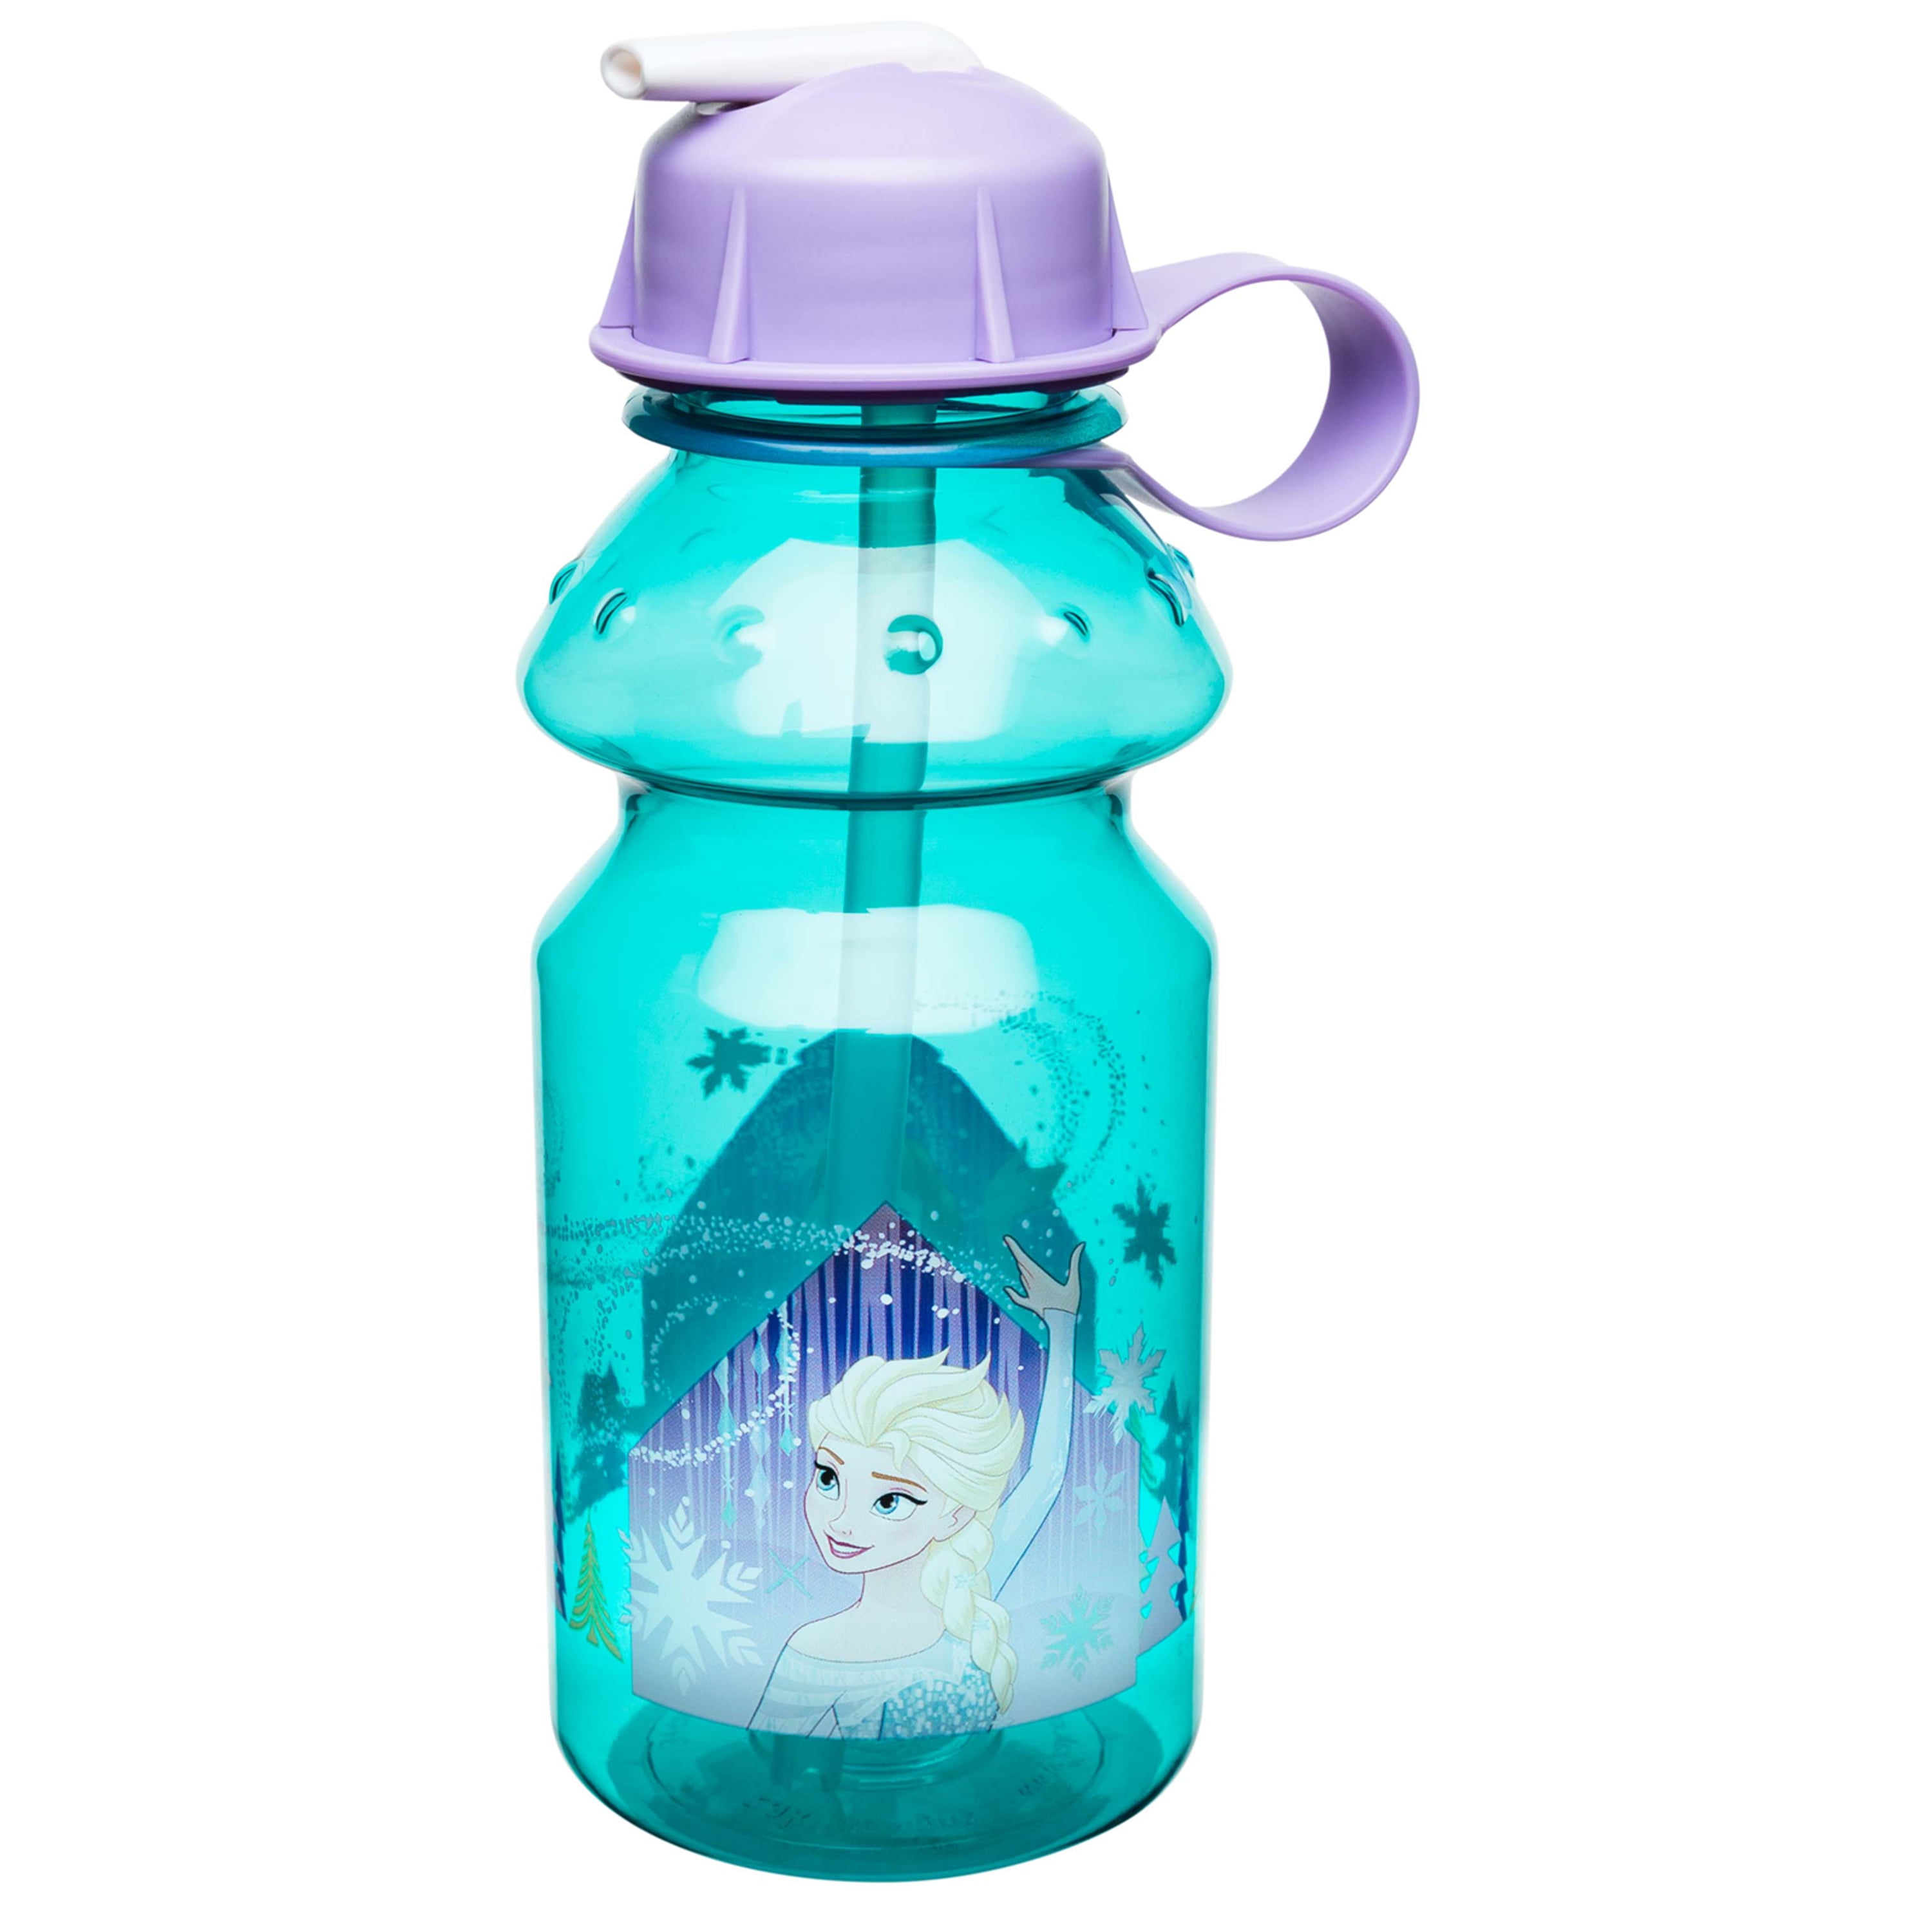 Designs B Leak-Proof Water Bottle Flip top 17.5 oz NEW Blue Jojo Siwa by ZAK 